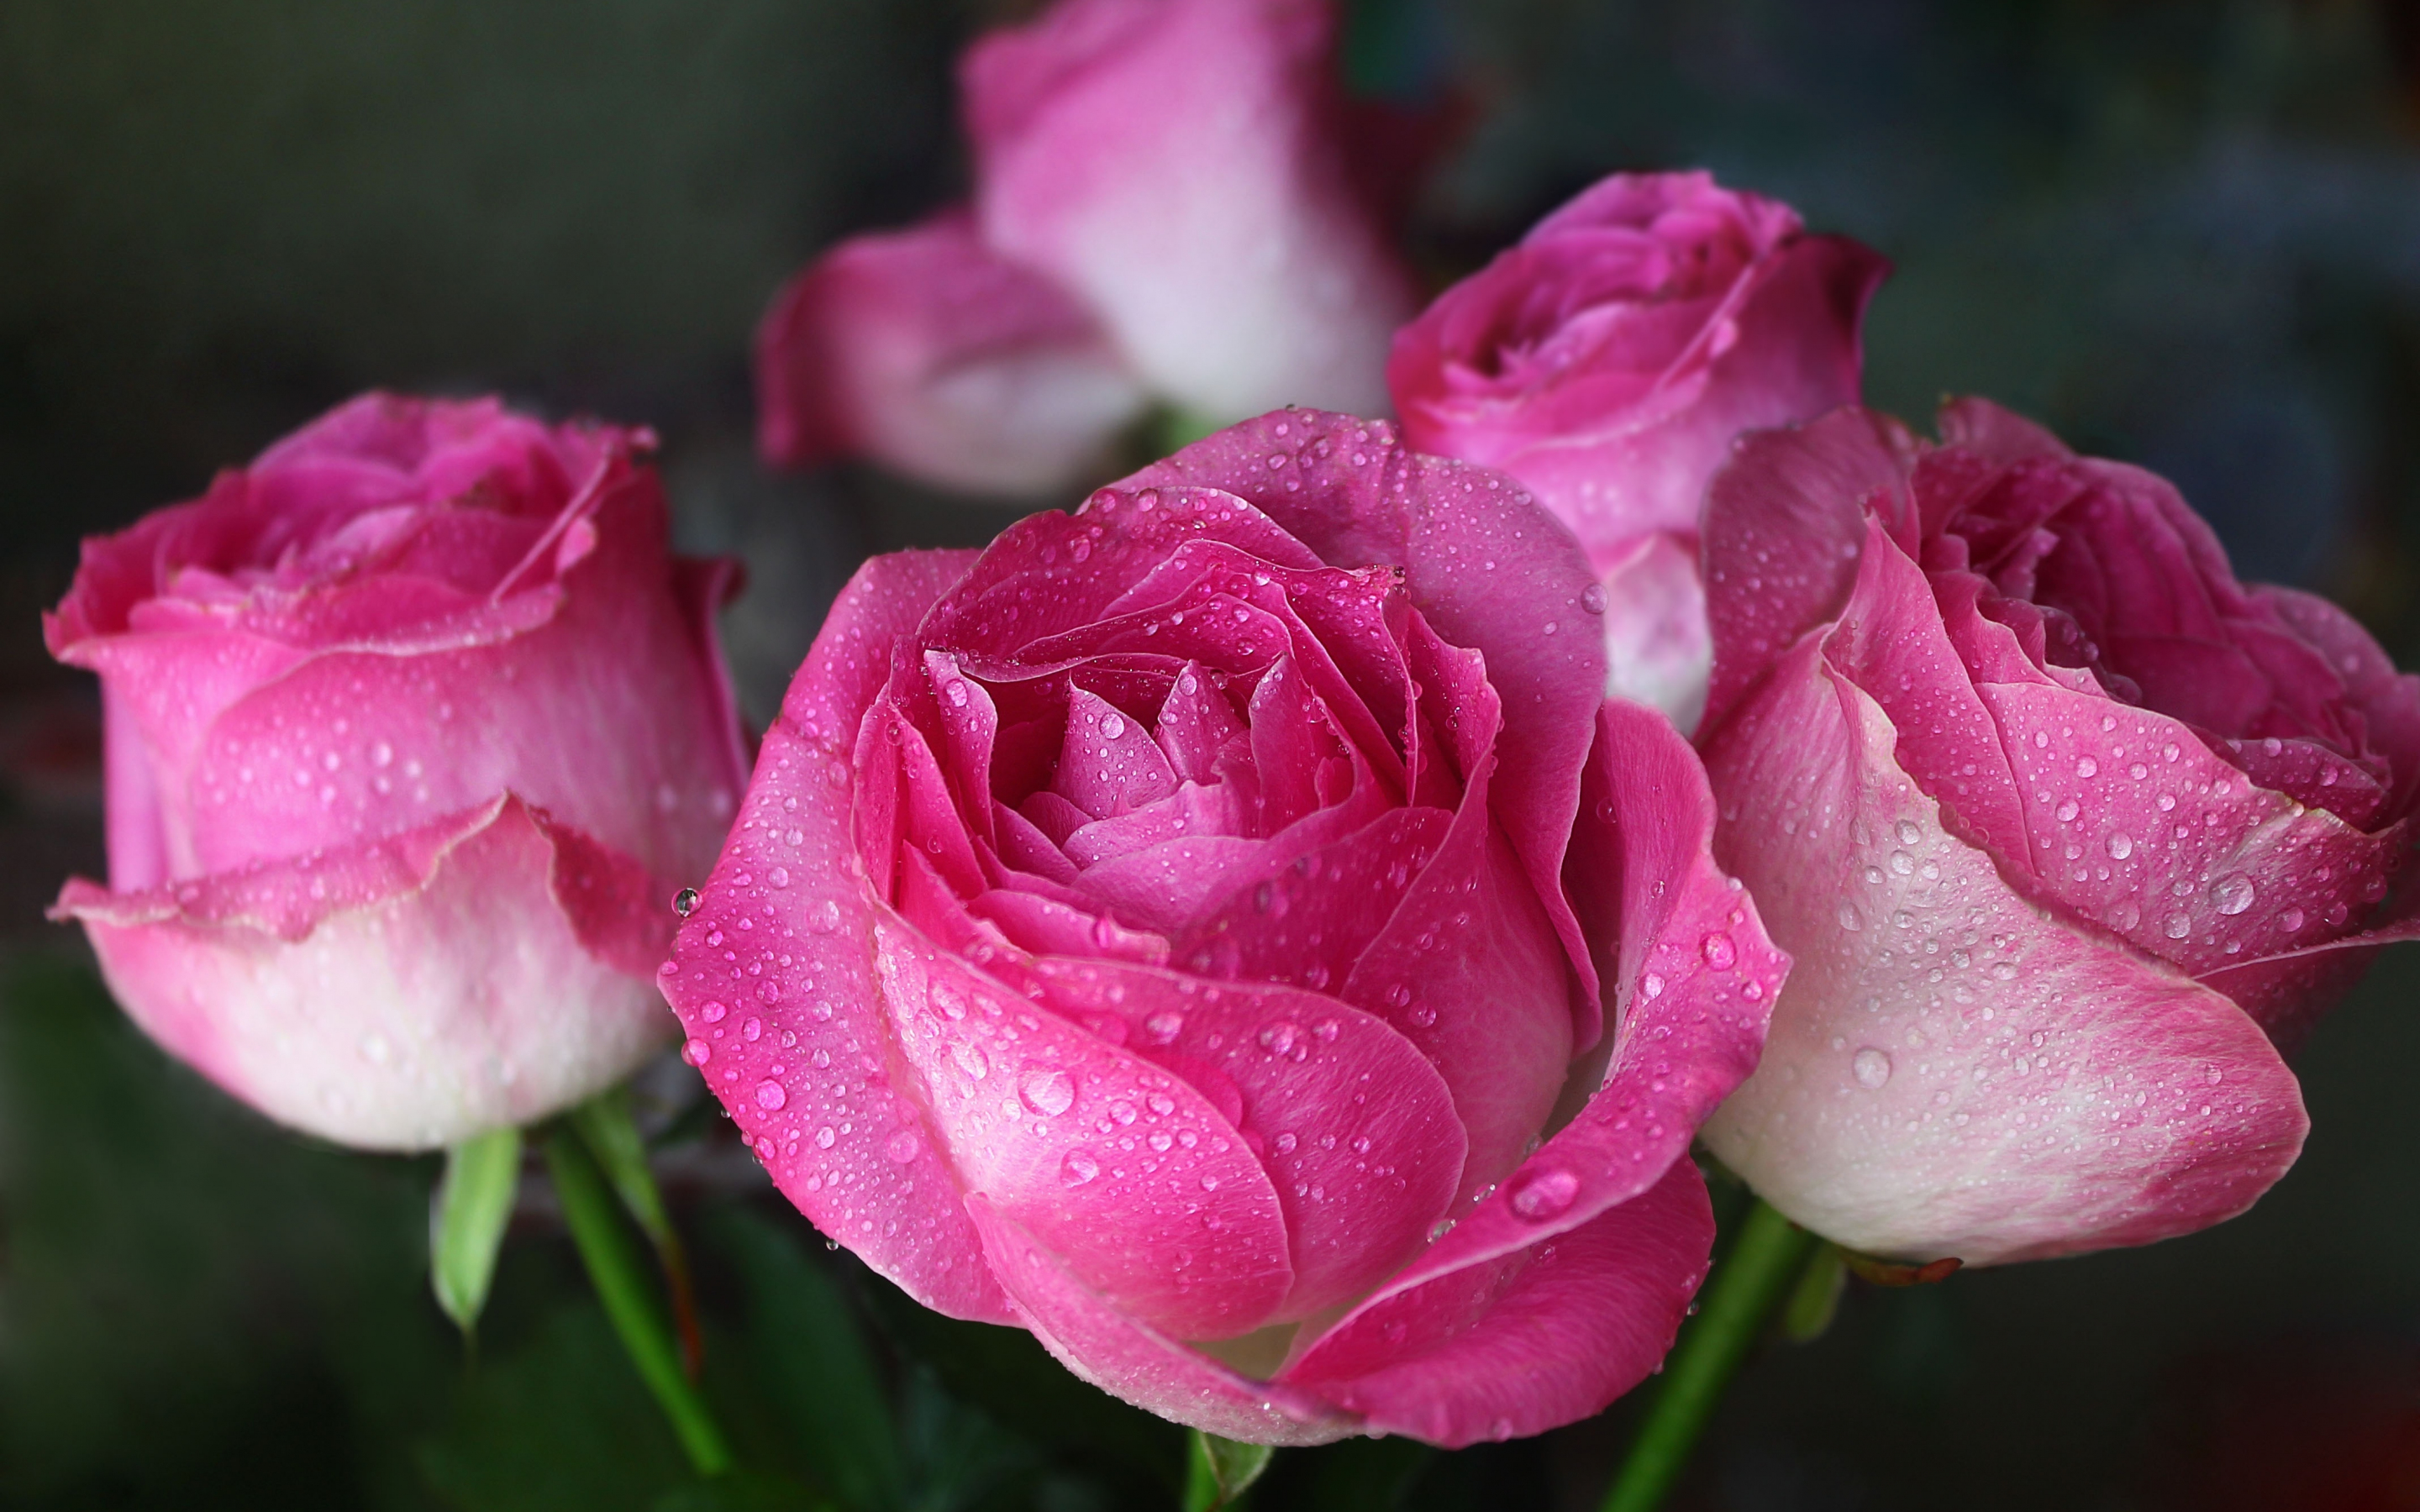 Drops, pink, close up, bloom, roses, 2880x1800 wallpaper